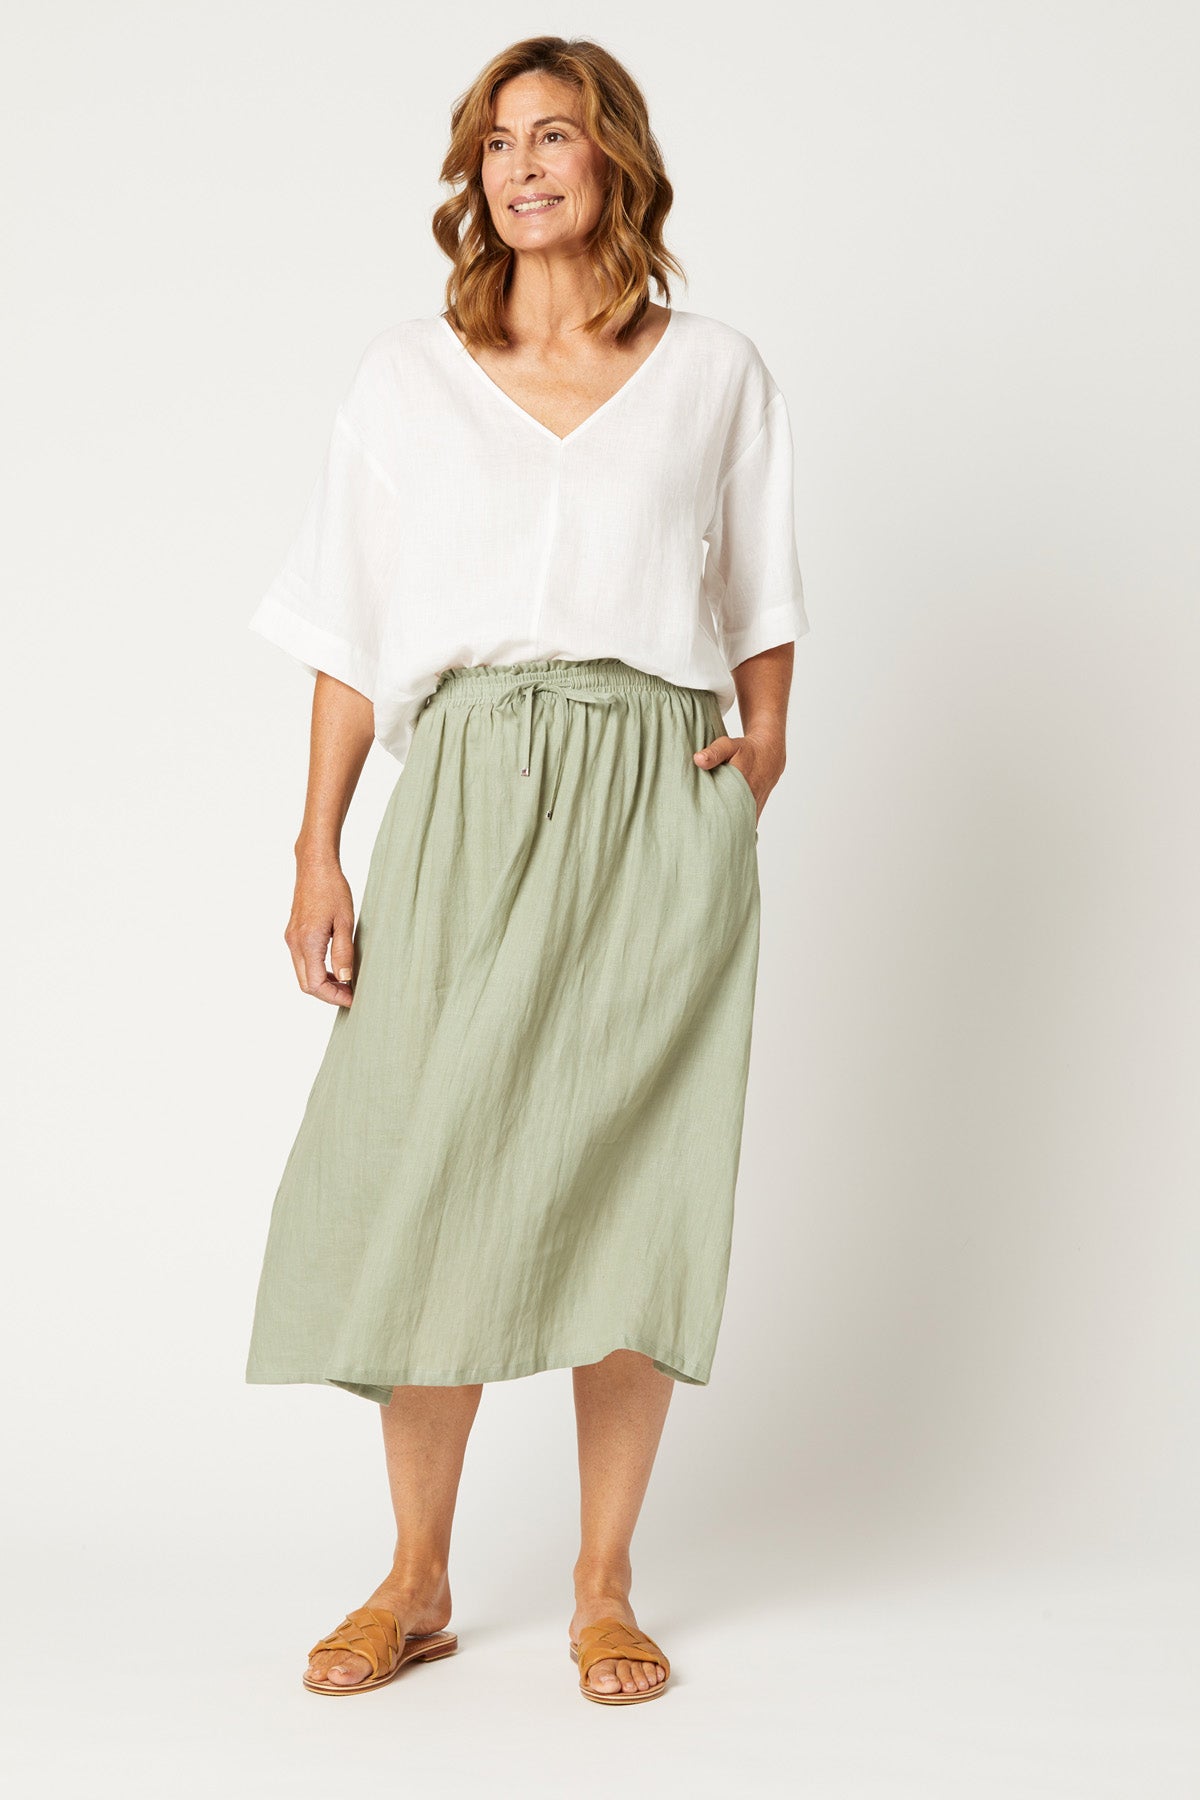 Nala Skirt - Sage - eb&ive Clothing - Skirt Mid Linen